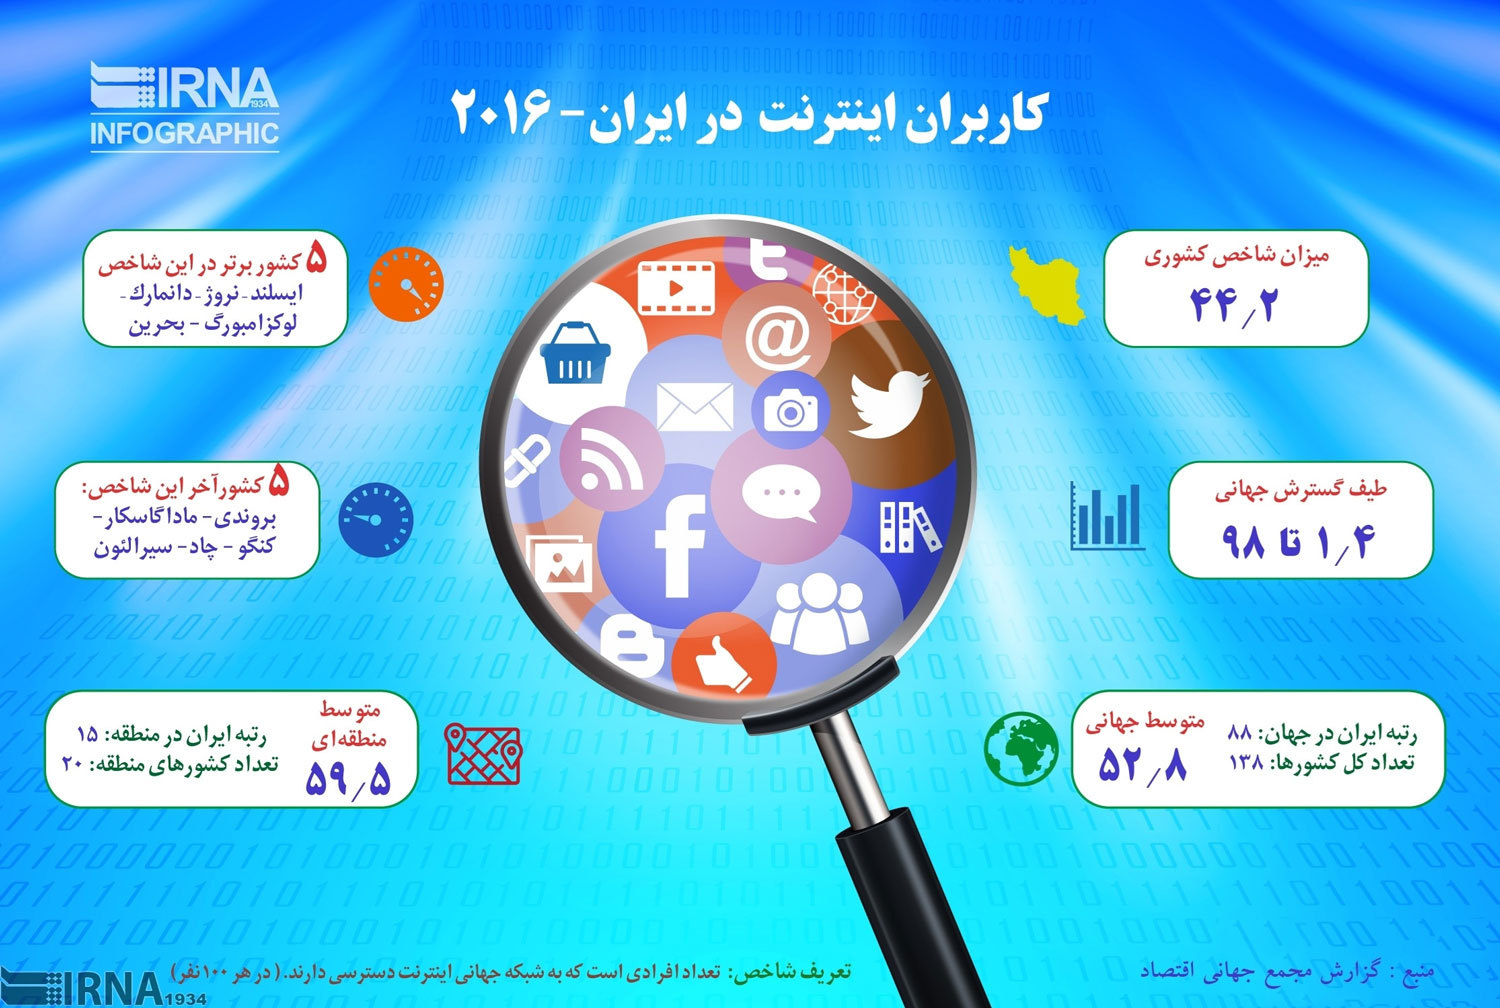 اینفوگرافی؛ کاربران اینترنت در ایران در سال ۲۰۱۶